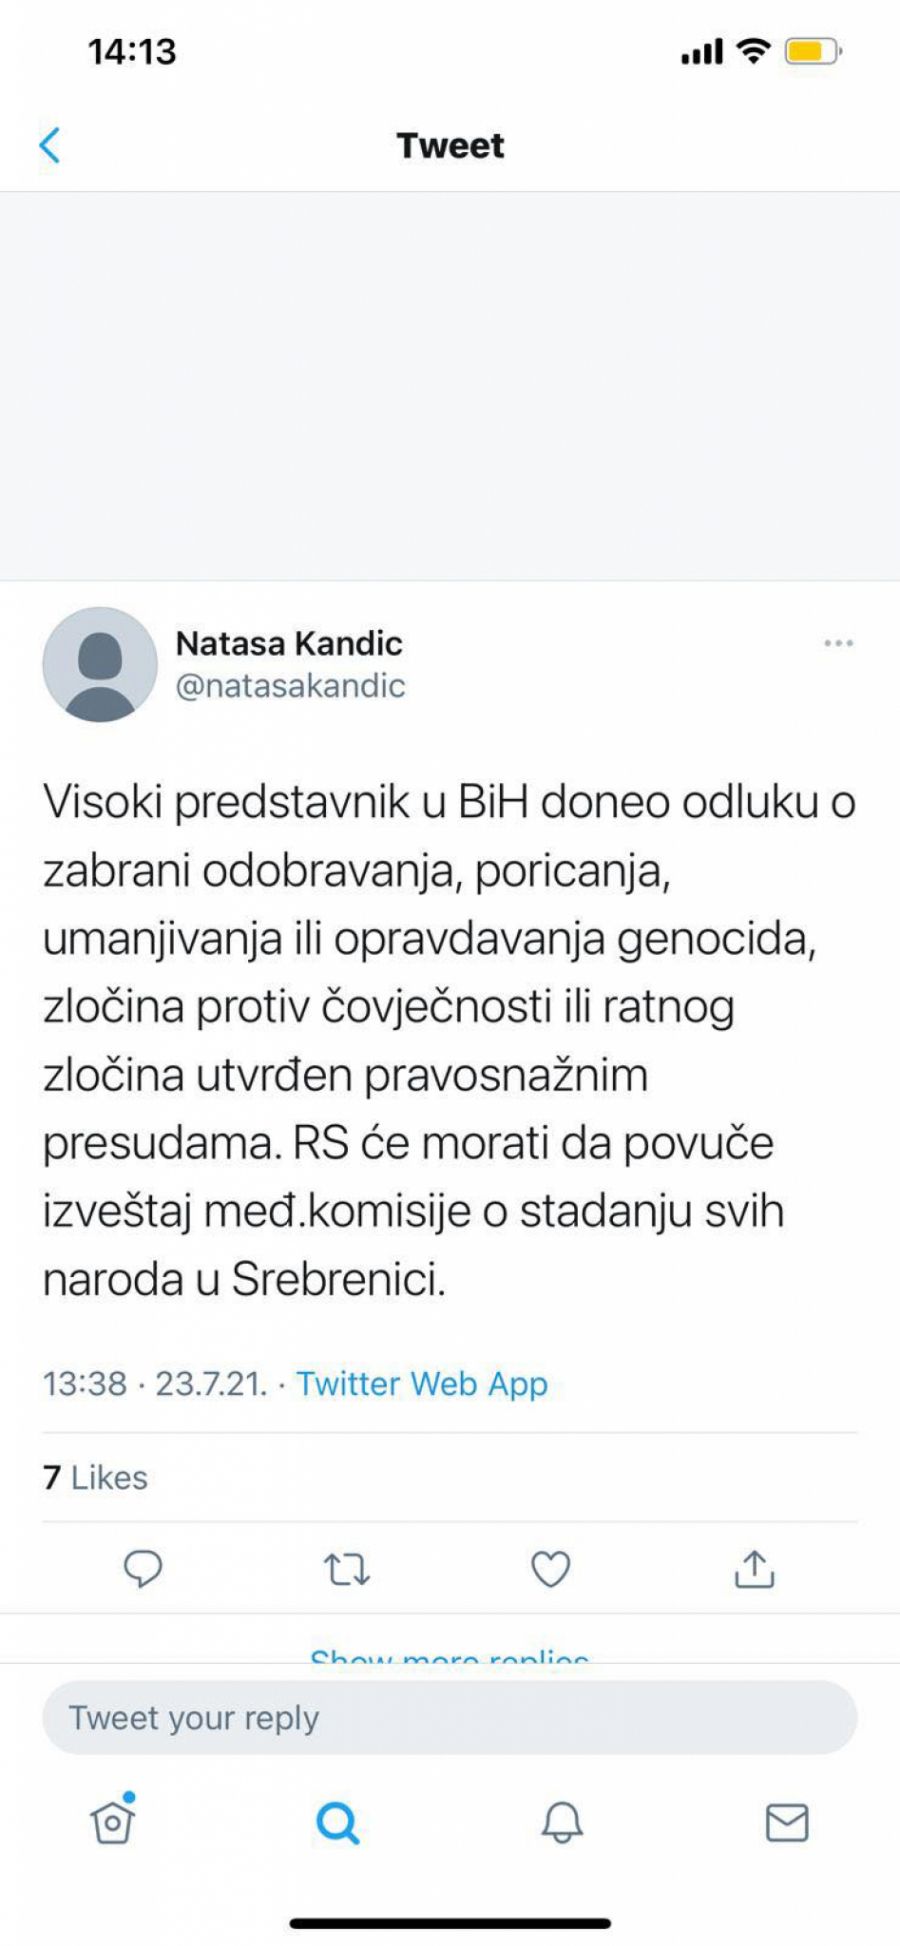 USTALA JE I ALA I VRANA Nataša Kandić i Sonja Biserko slave: Aha, sada ćemo zabraniti da se priča o srpskim žrtvama!